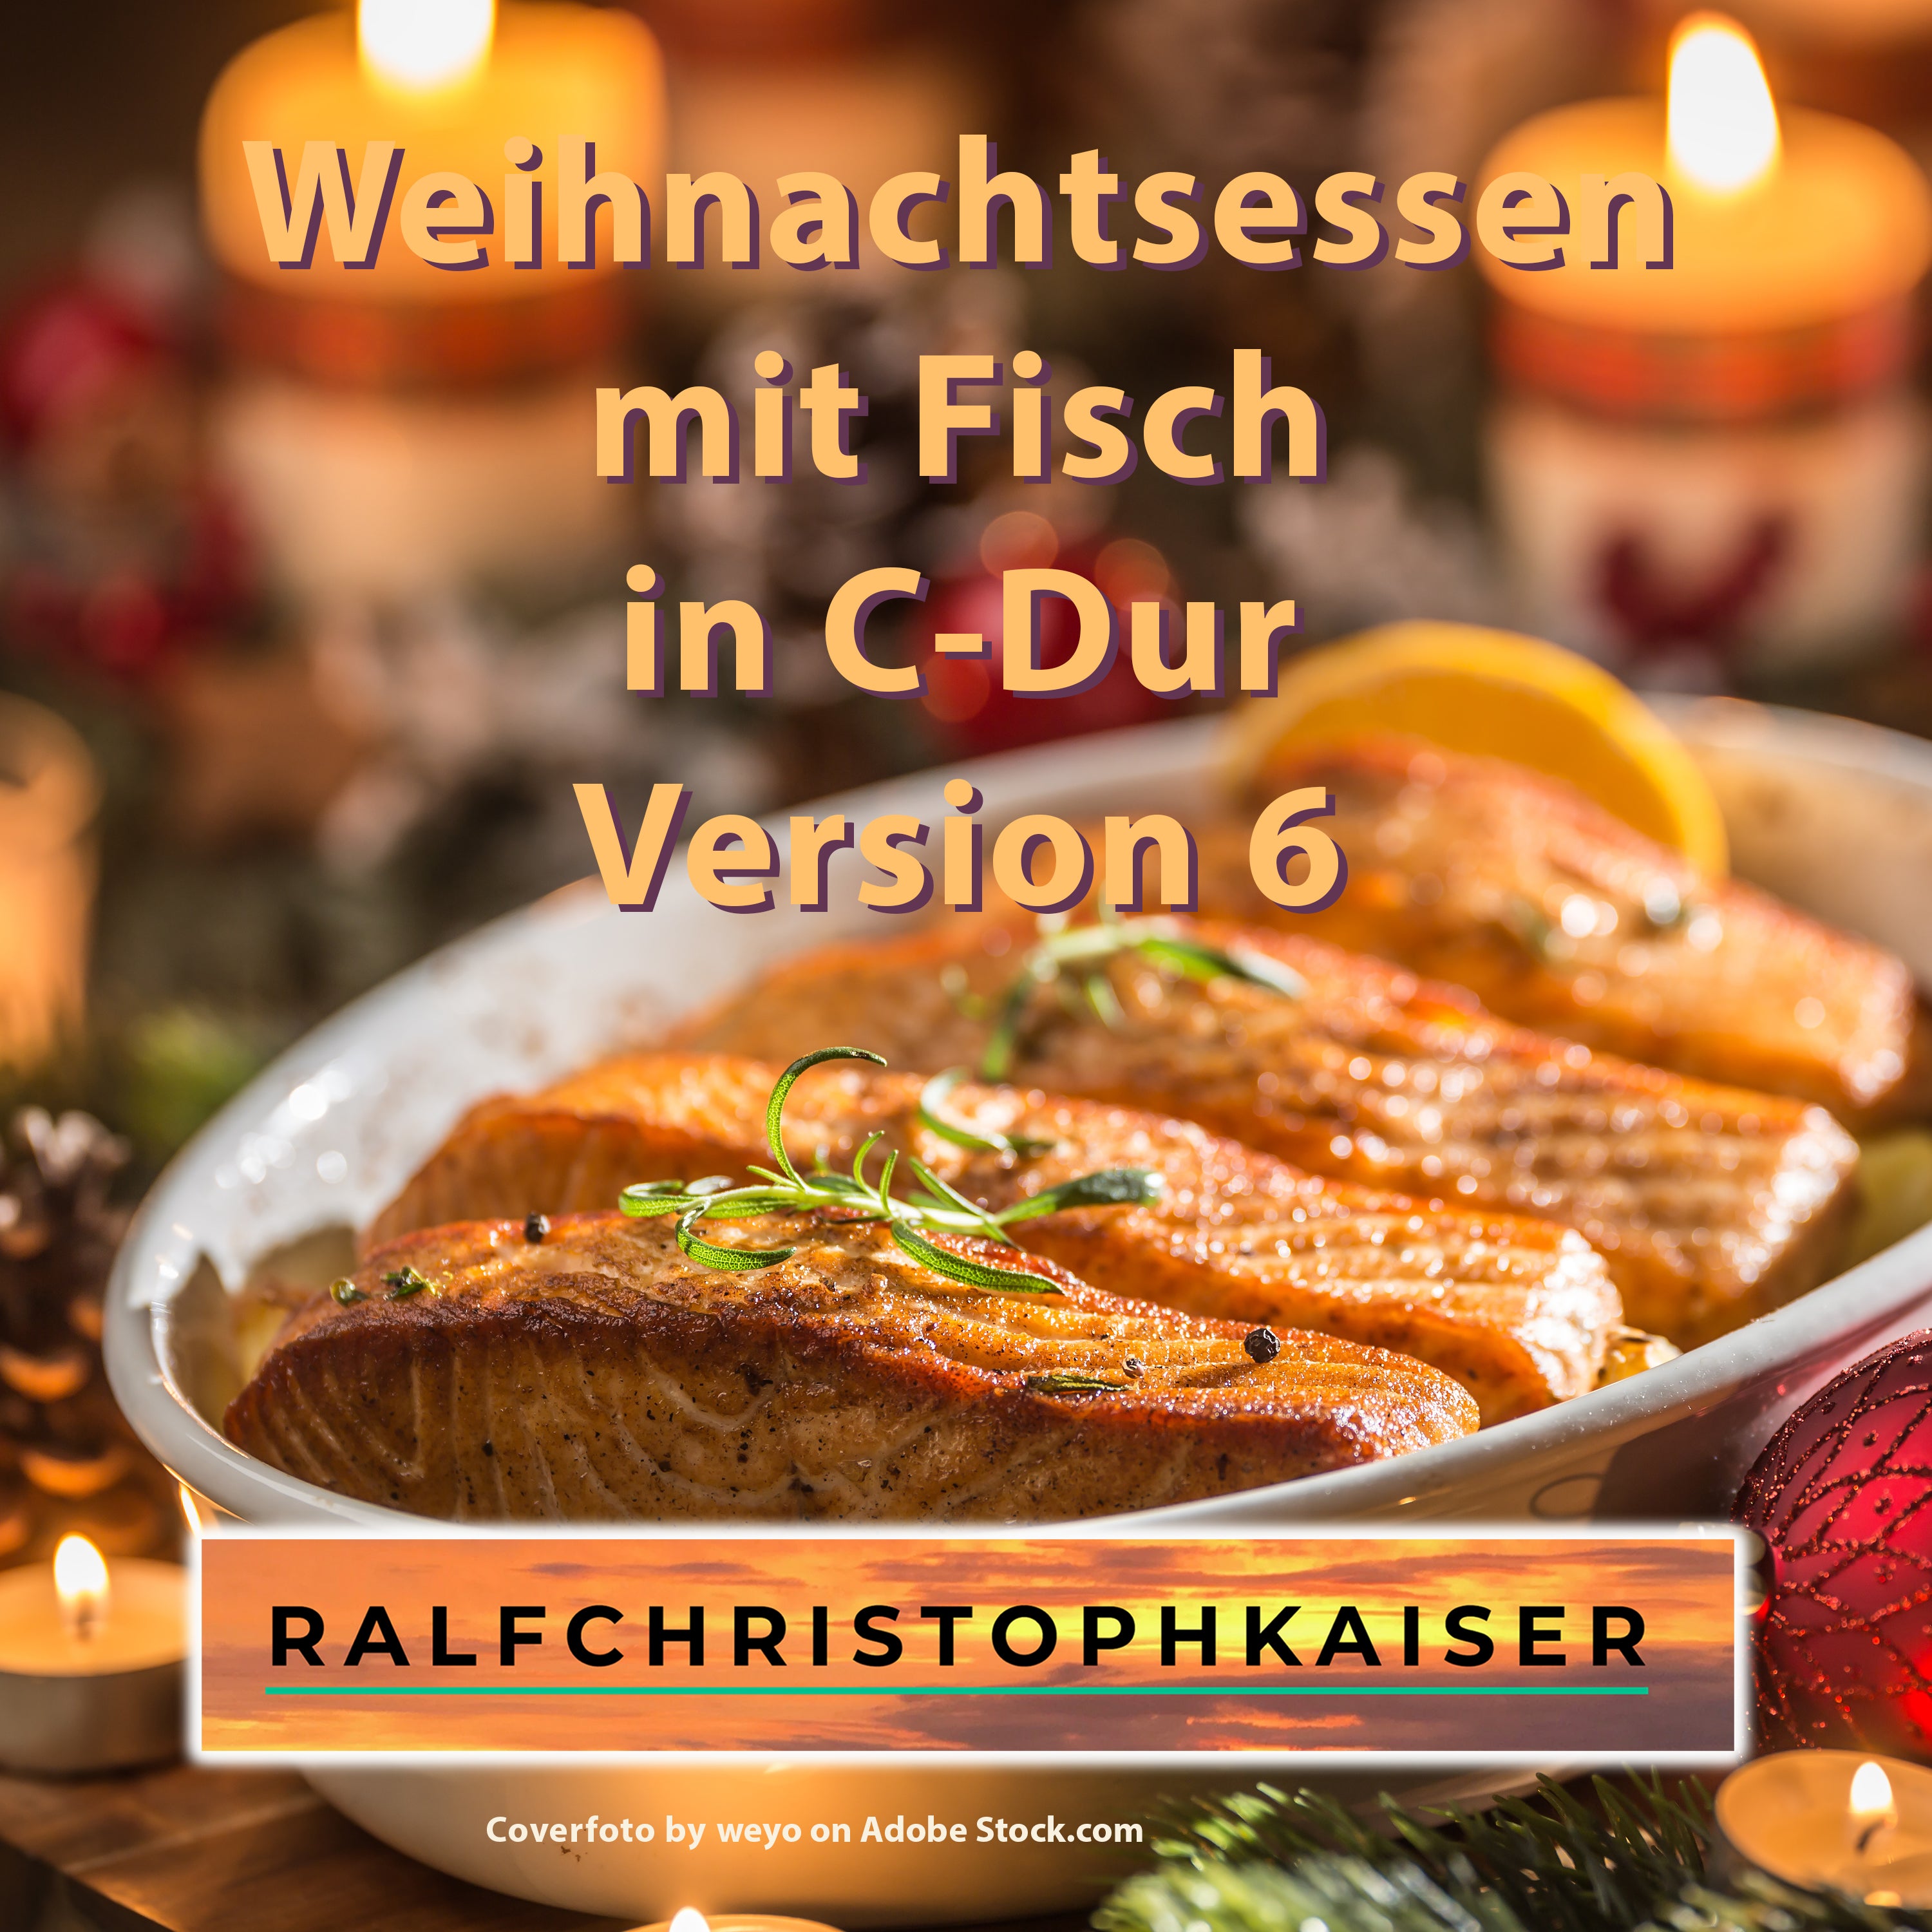 Weihnachtsessen mit Fisch das neue Festtagsorchester in C-Dur by Ralf Christoph Kaiser mit Noten und in Ultra HD Version